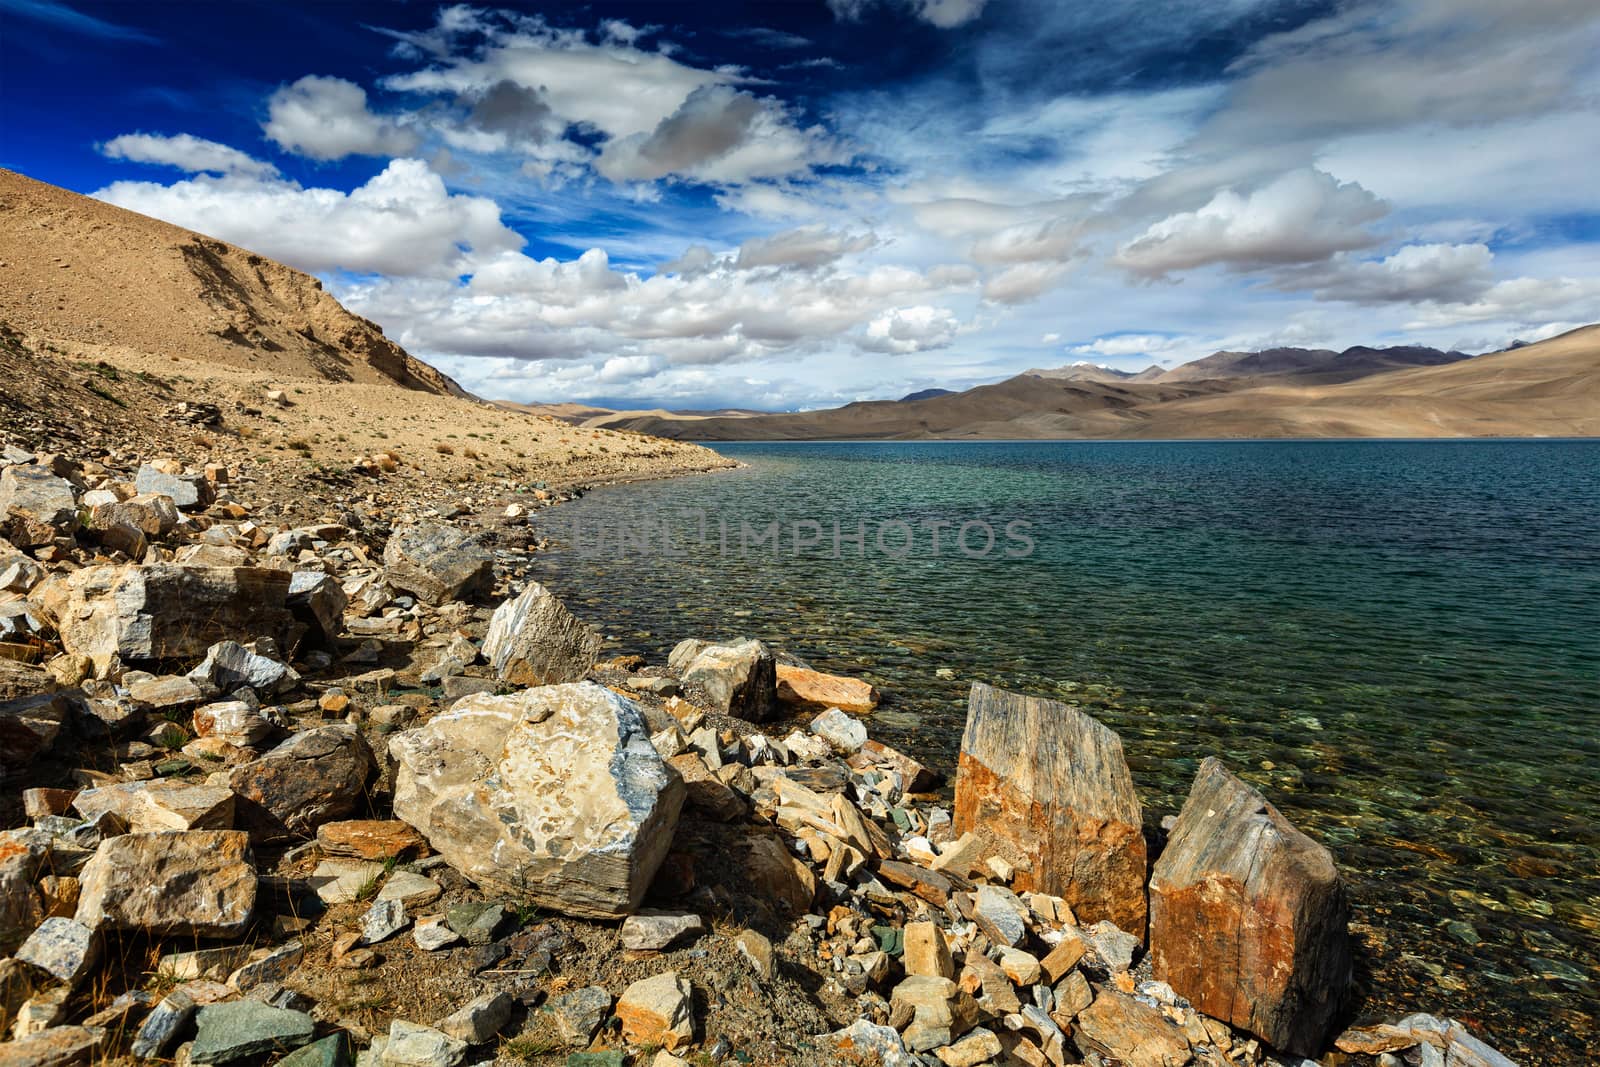 Tso Moriri lake in Himalayas, Ladakh by dimol